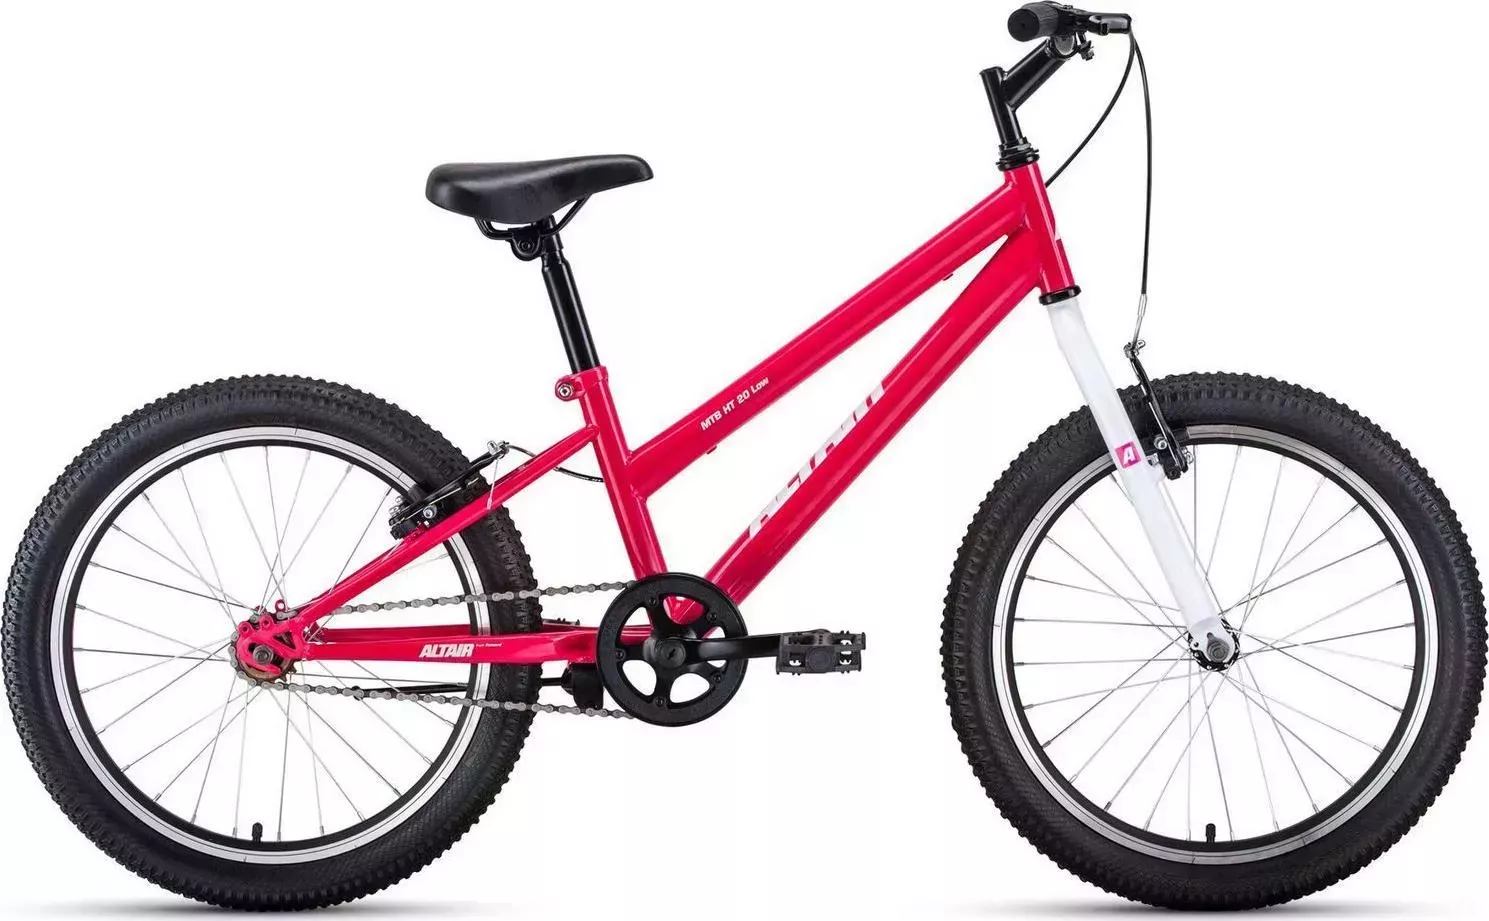 Велосипед для малышей Altair MTB HT 20 LOW розовый/белый (IBK22AL20086)